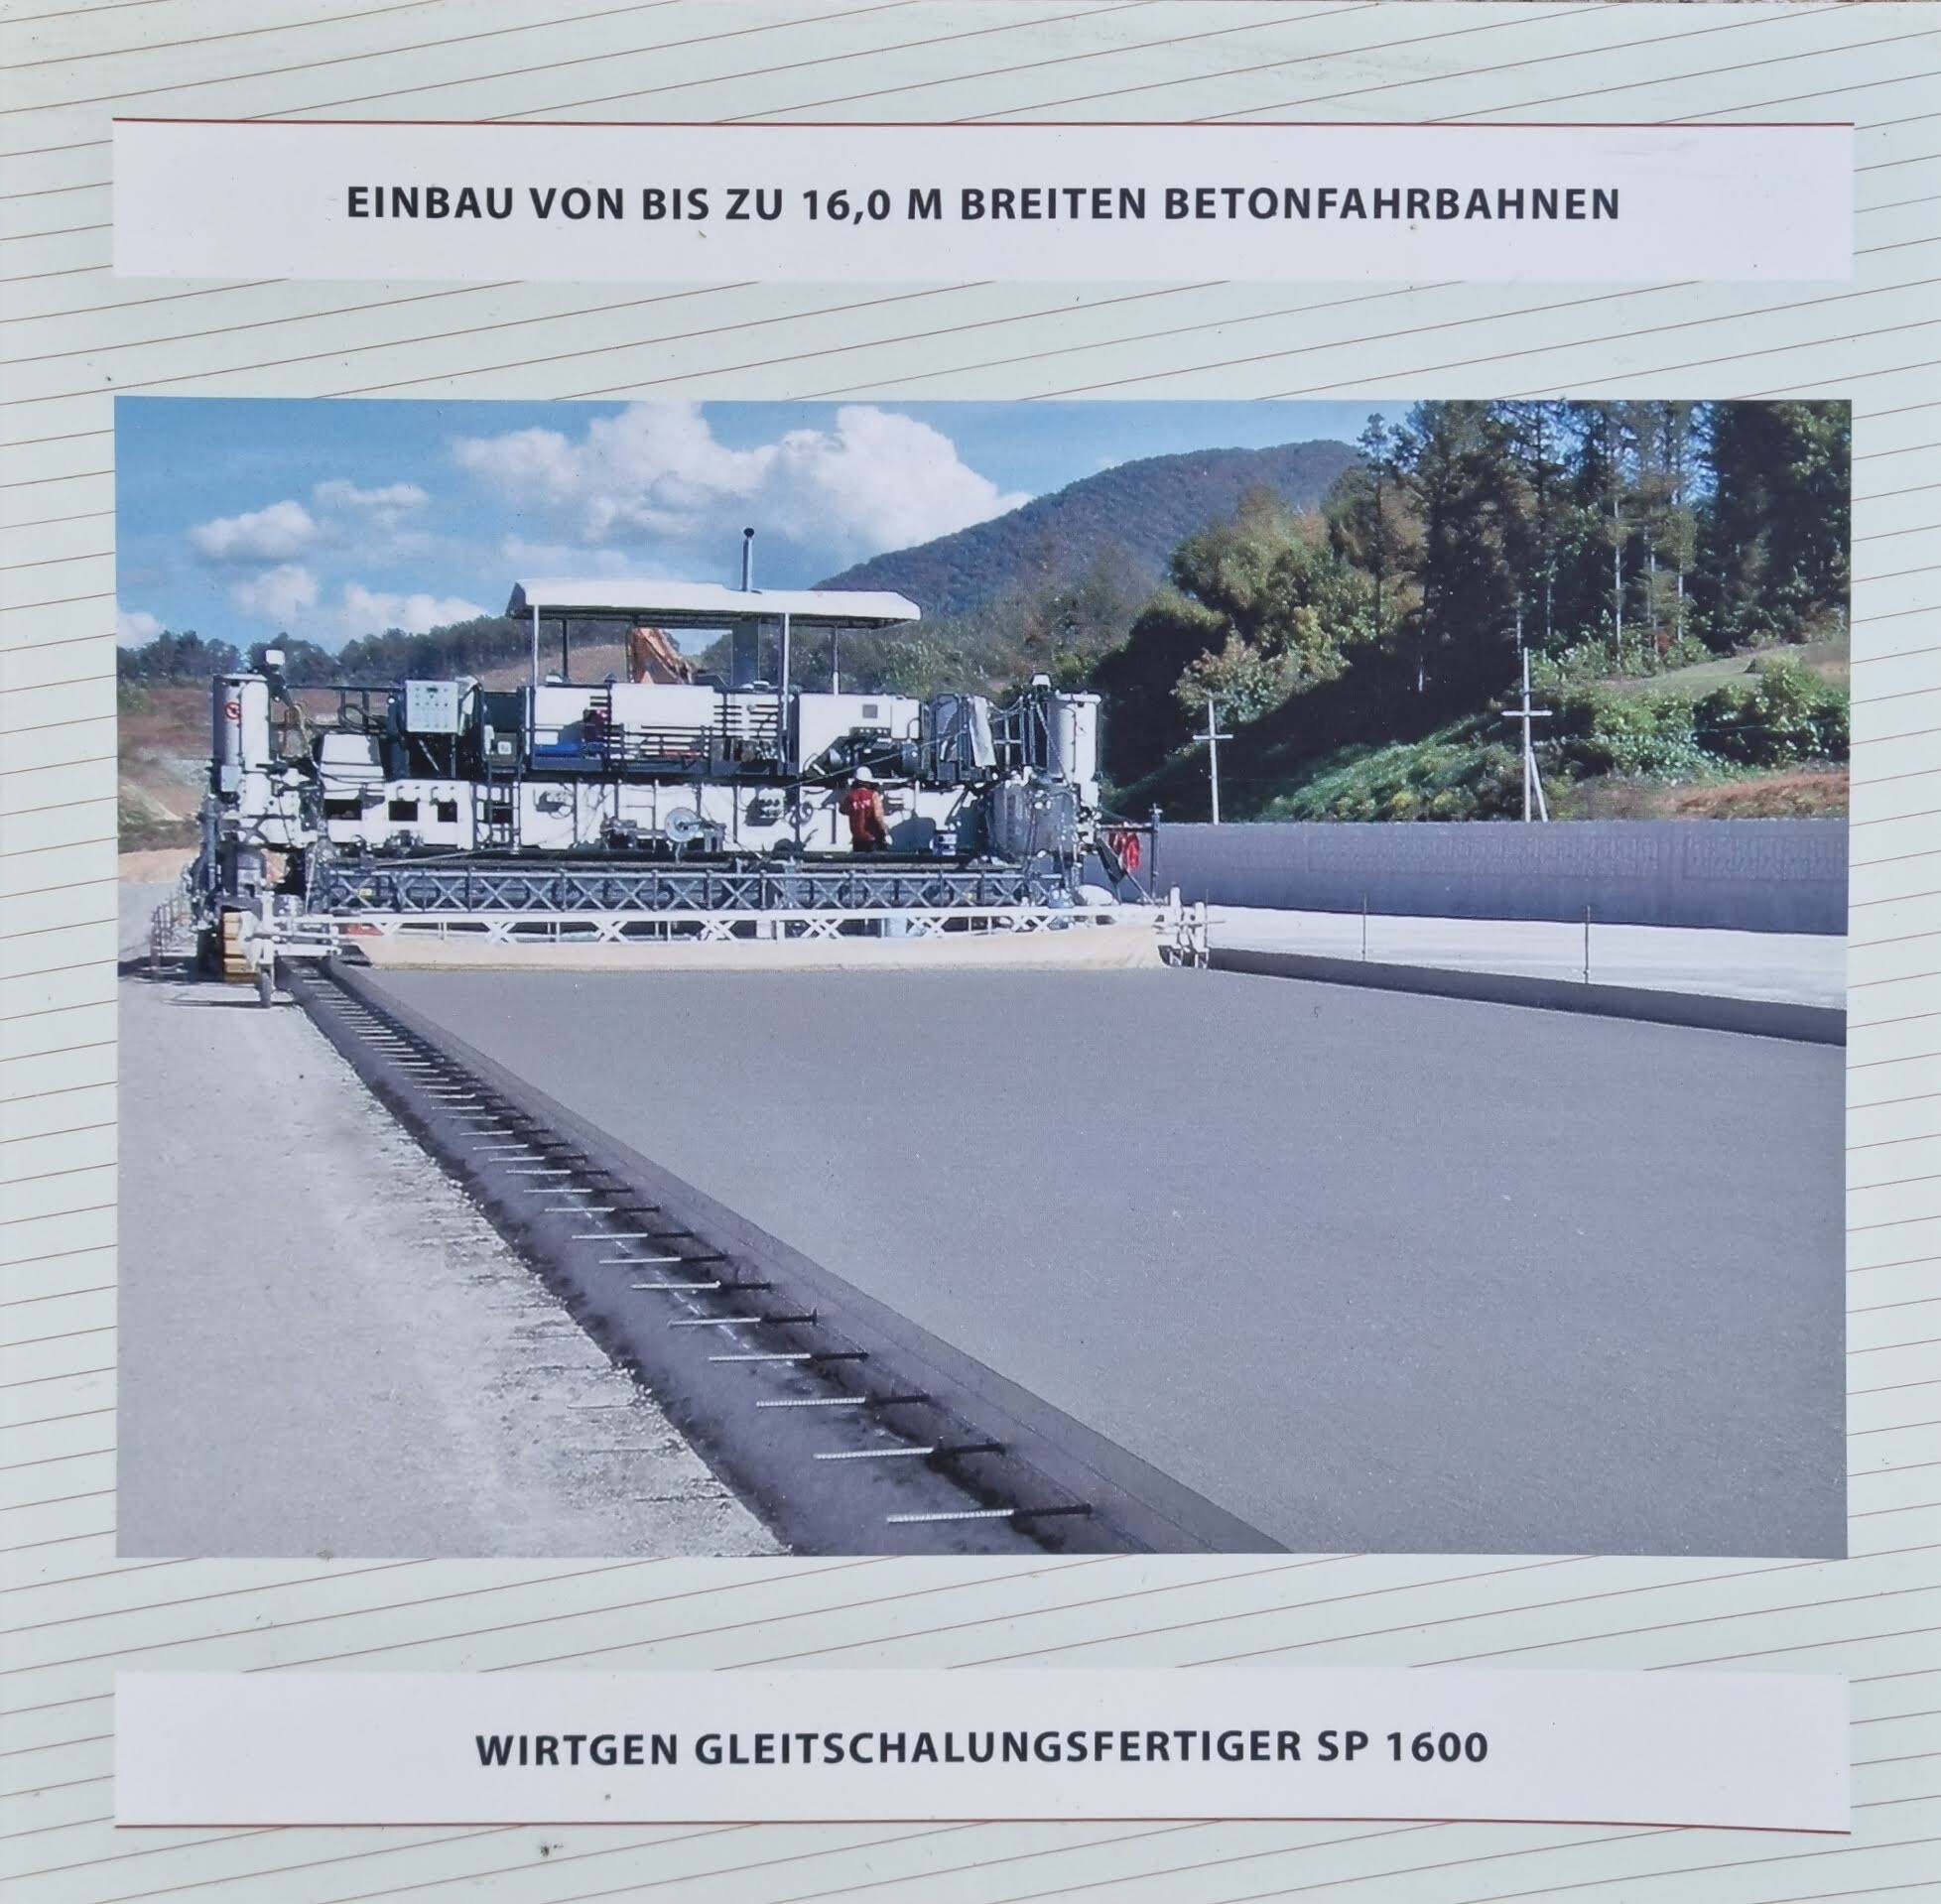 Schaubild Einbau von breiten Betonstraßen (Deutsches Straßenmuseum e.V. CC BY-NC-SA)